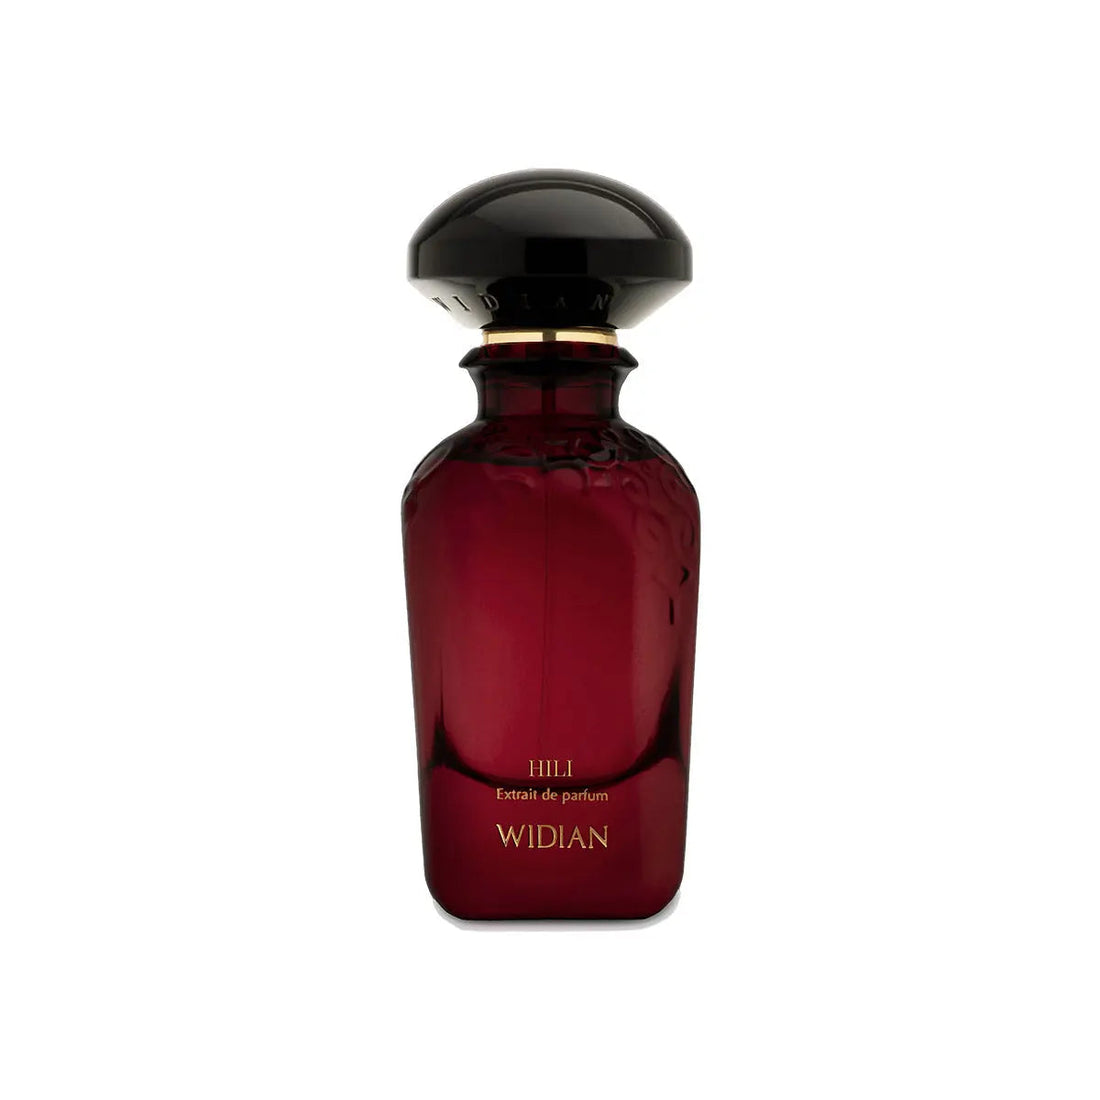 Extrait de parfum HILI Widian - 50 ml